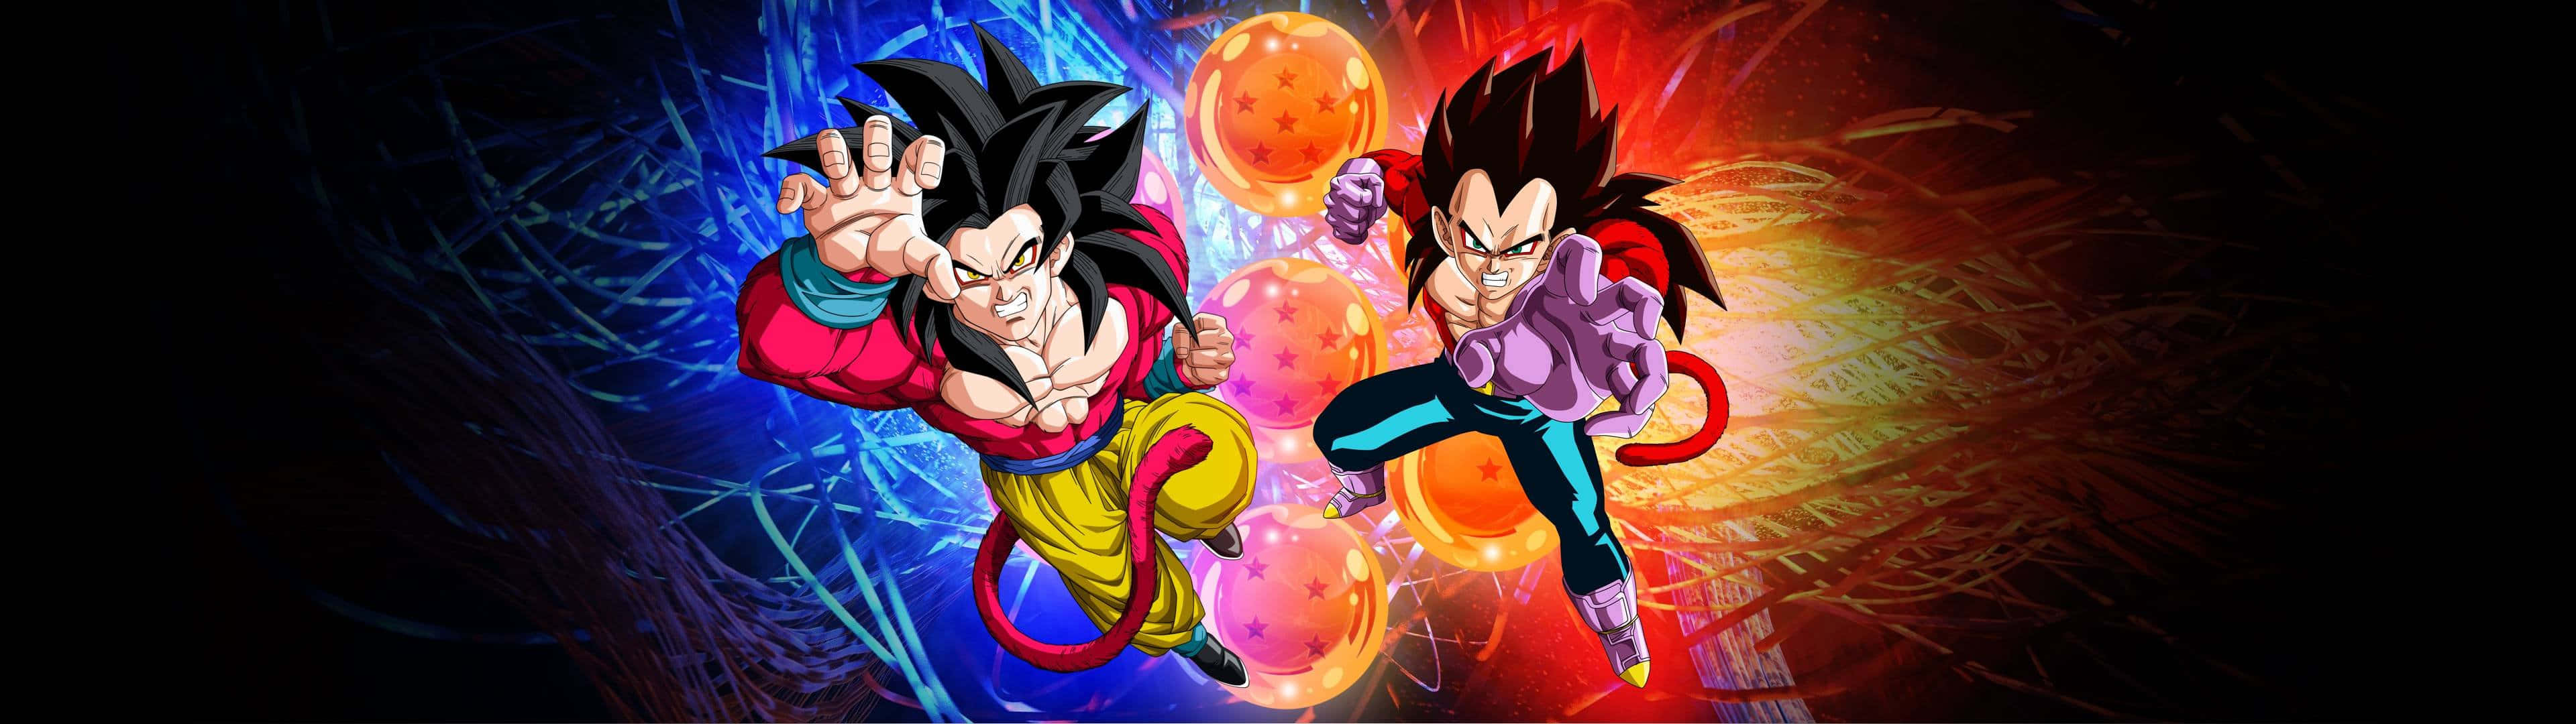 Dragon Balls Vegeta And Goku 3840x1080 Anime Picture